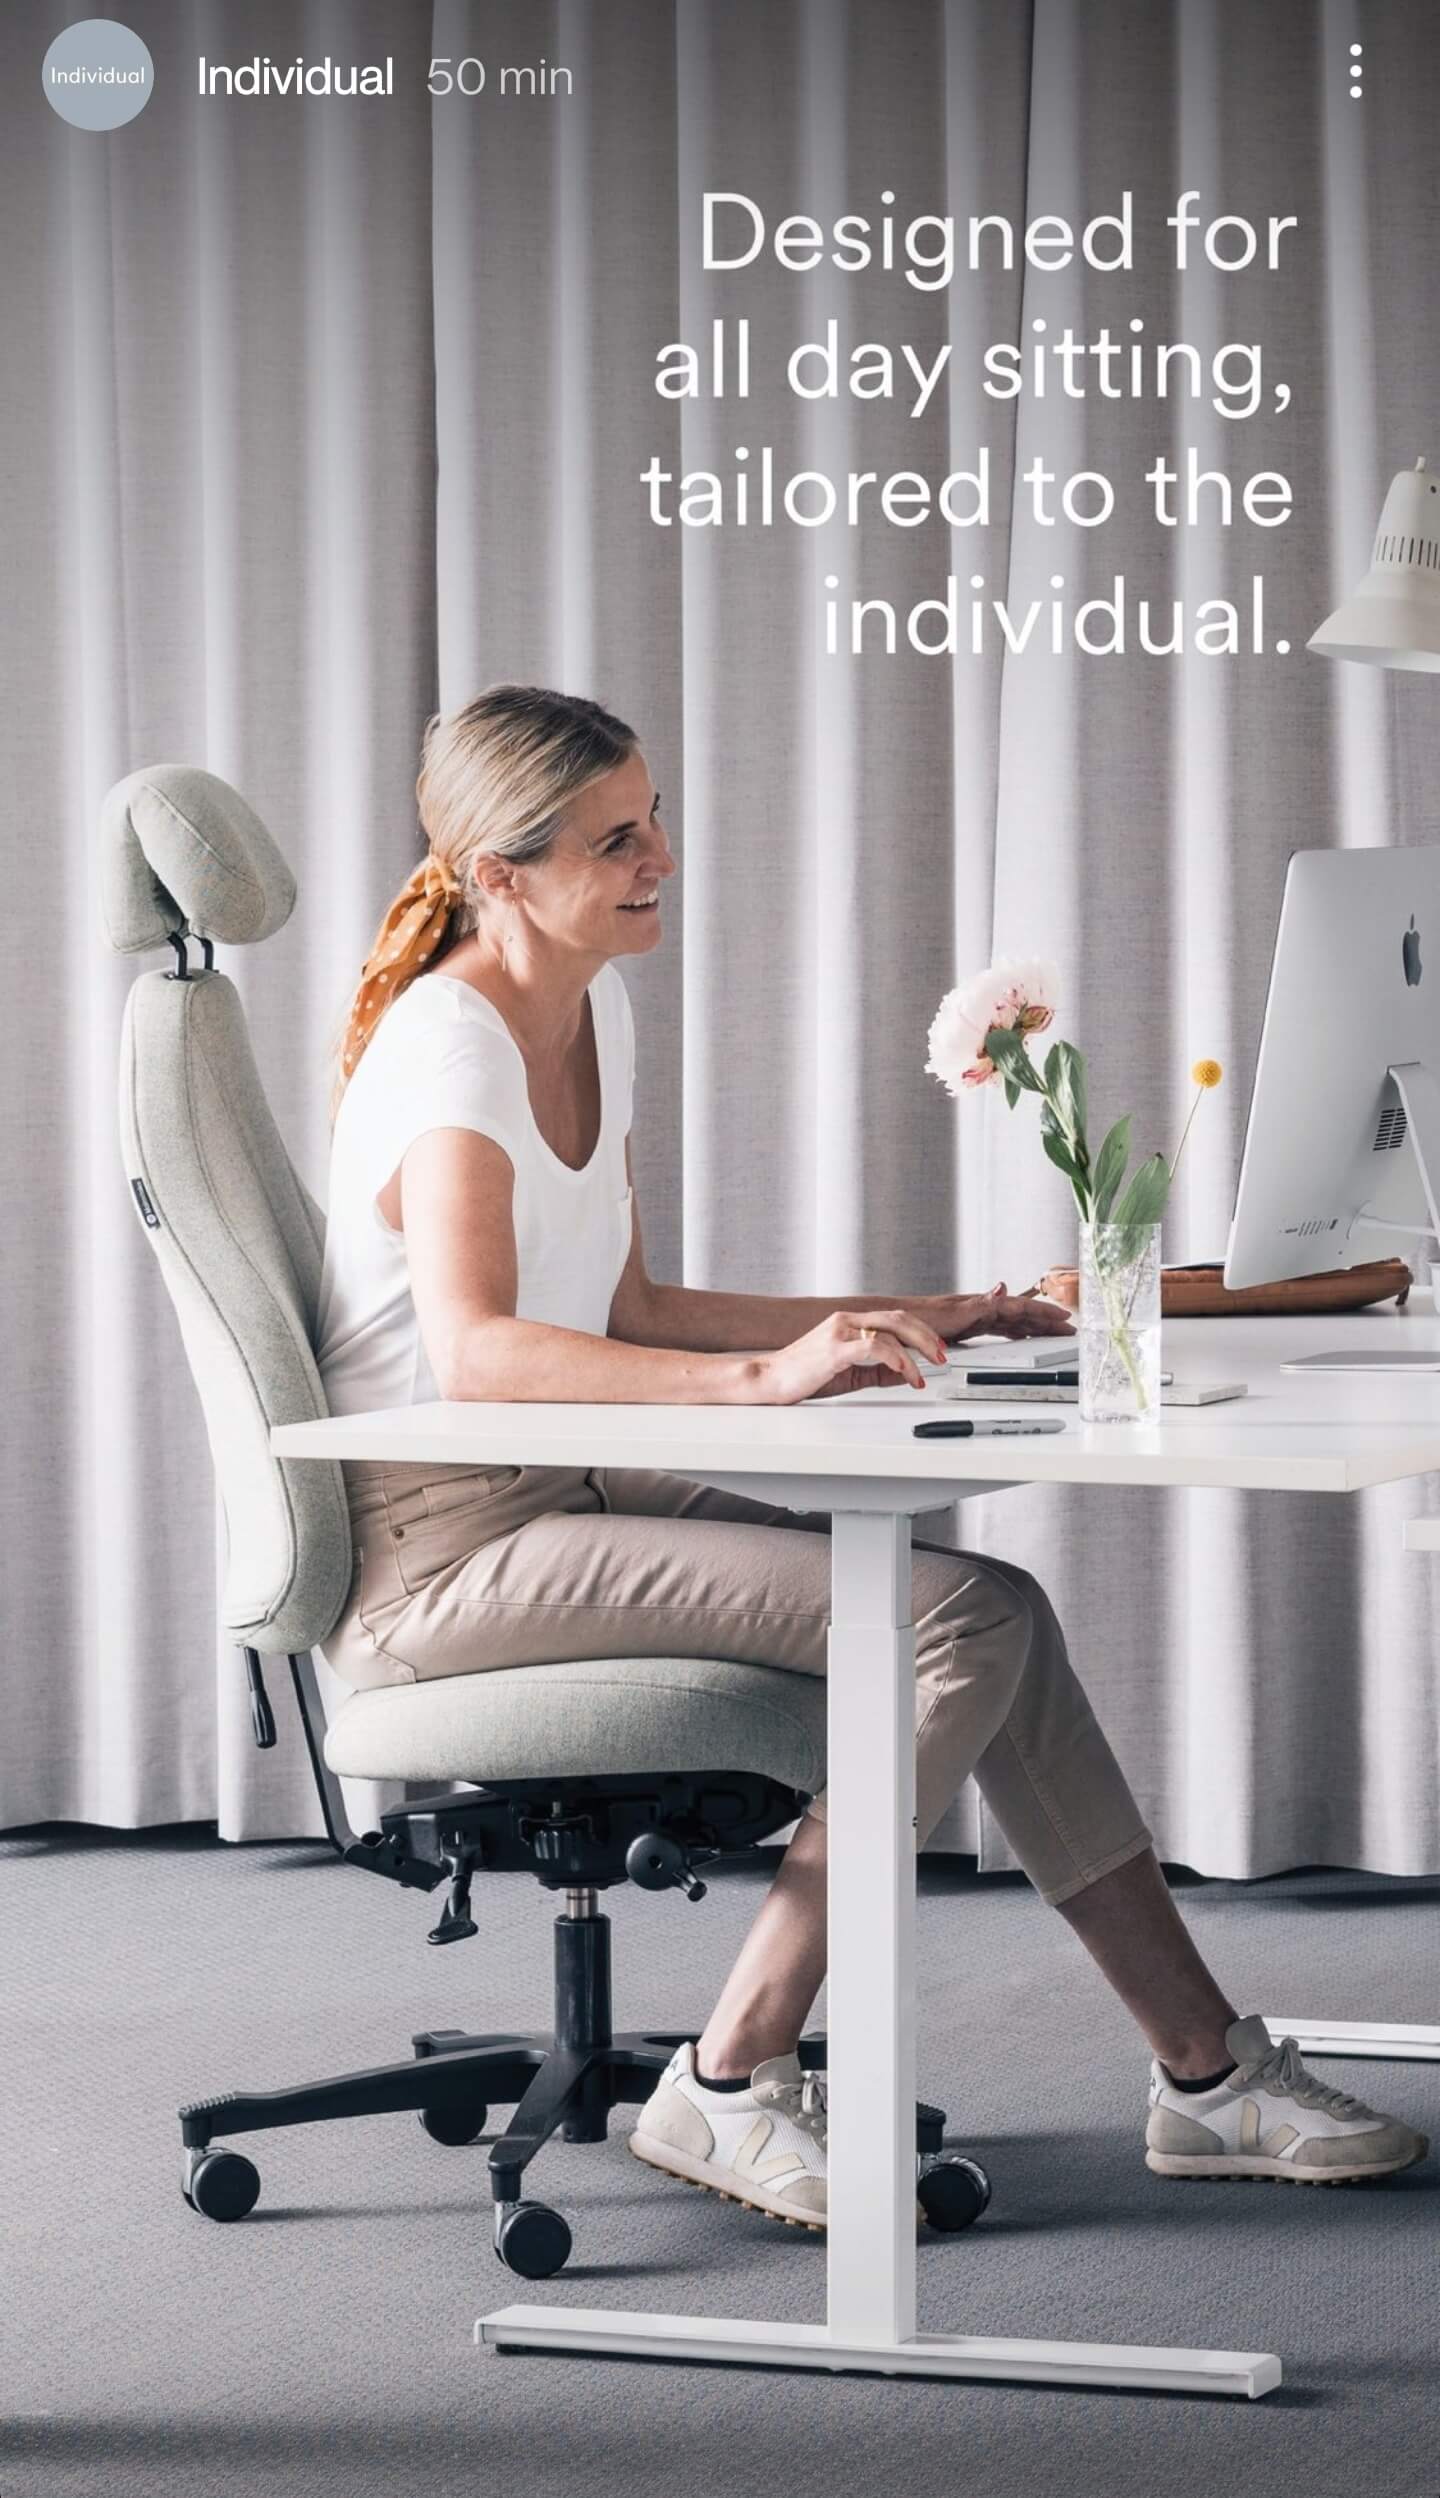 Lad ægte læder pryde dit kontor: Opgrader din kontorstol med stil og kvalitet hos Prostole